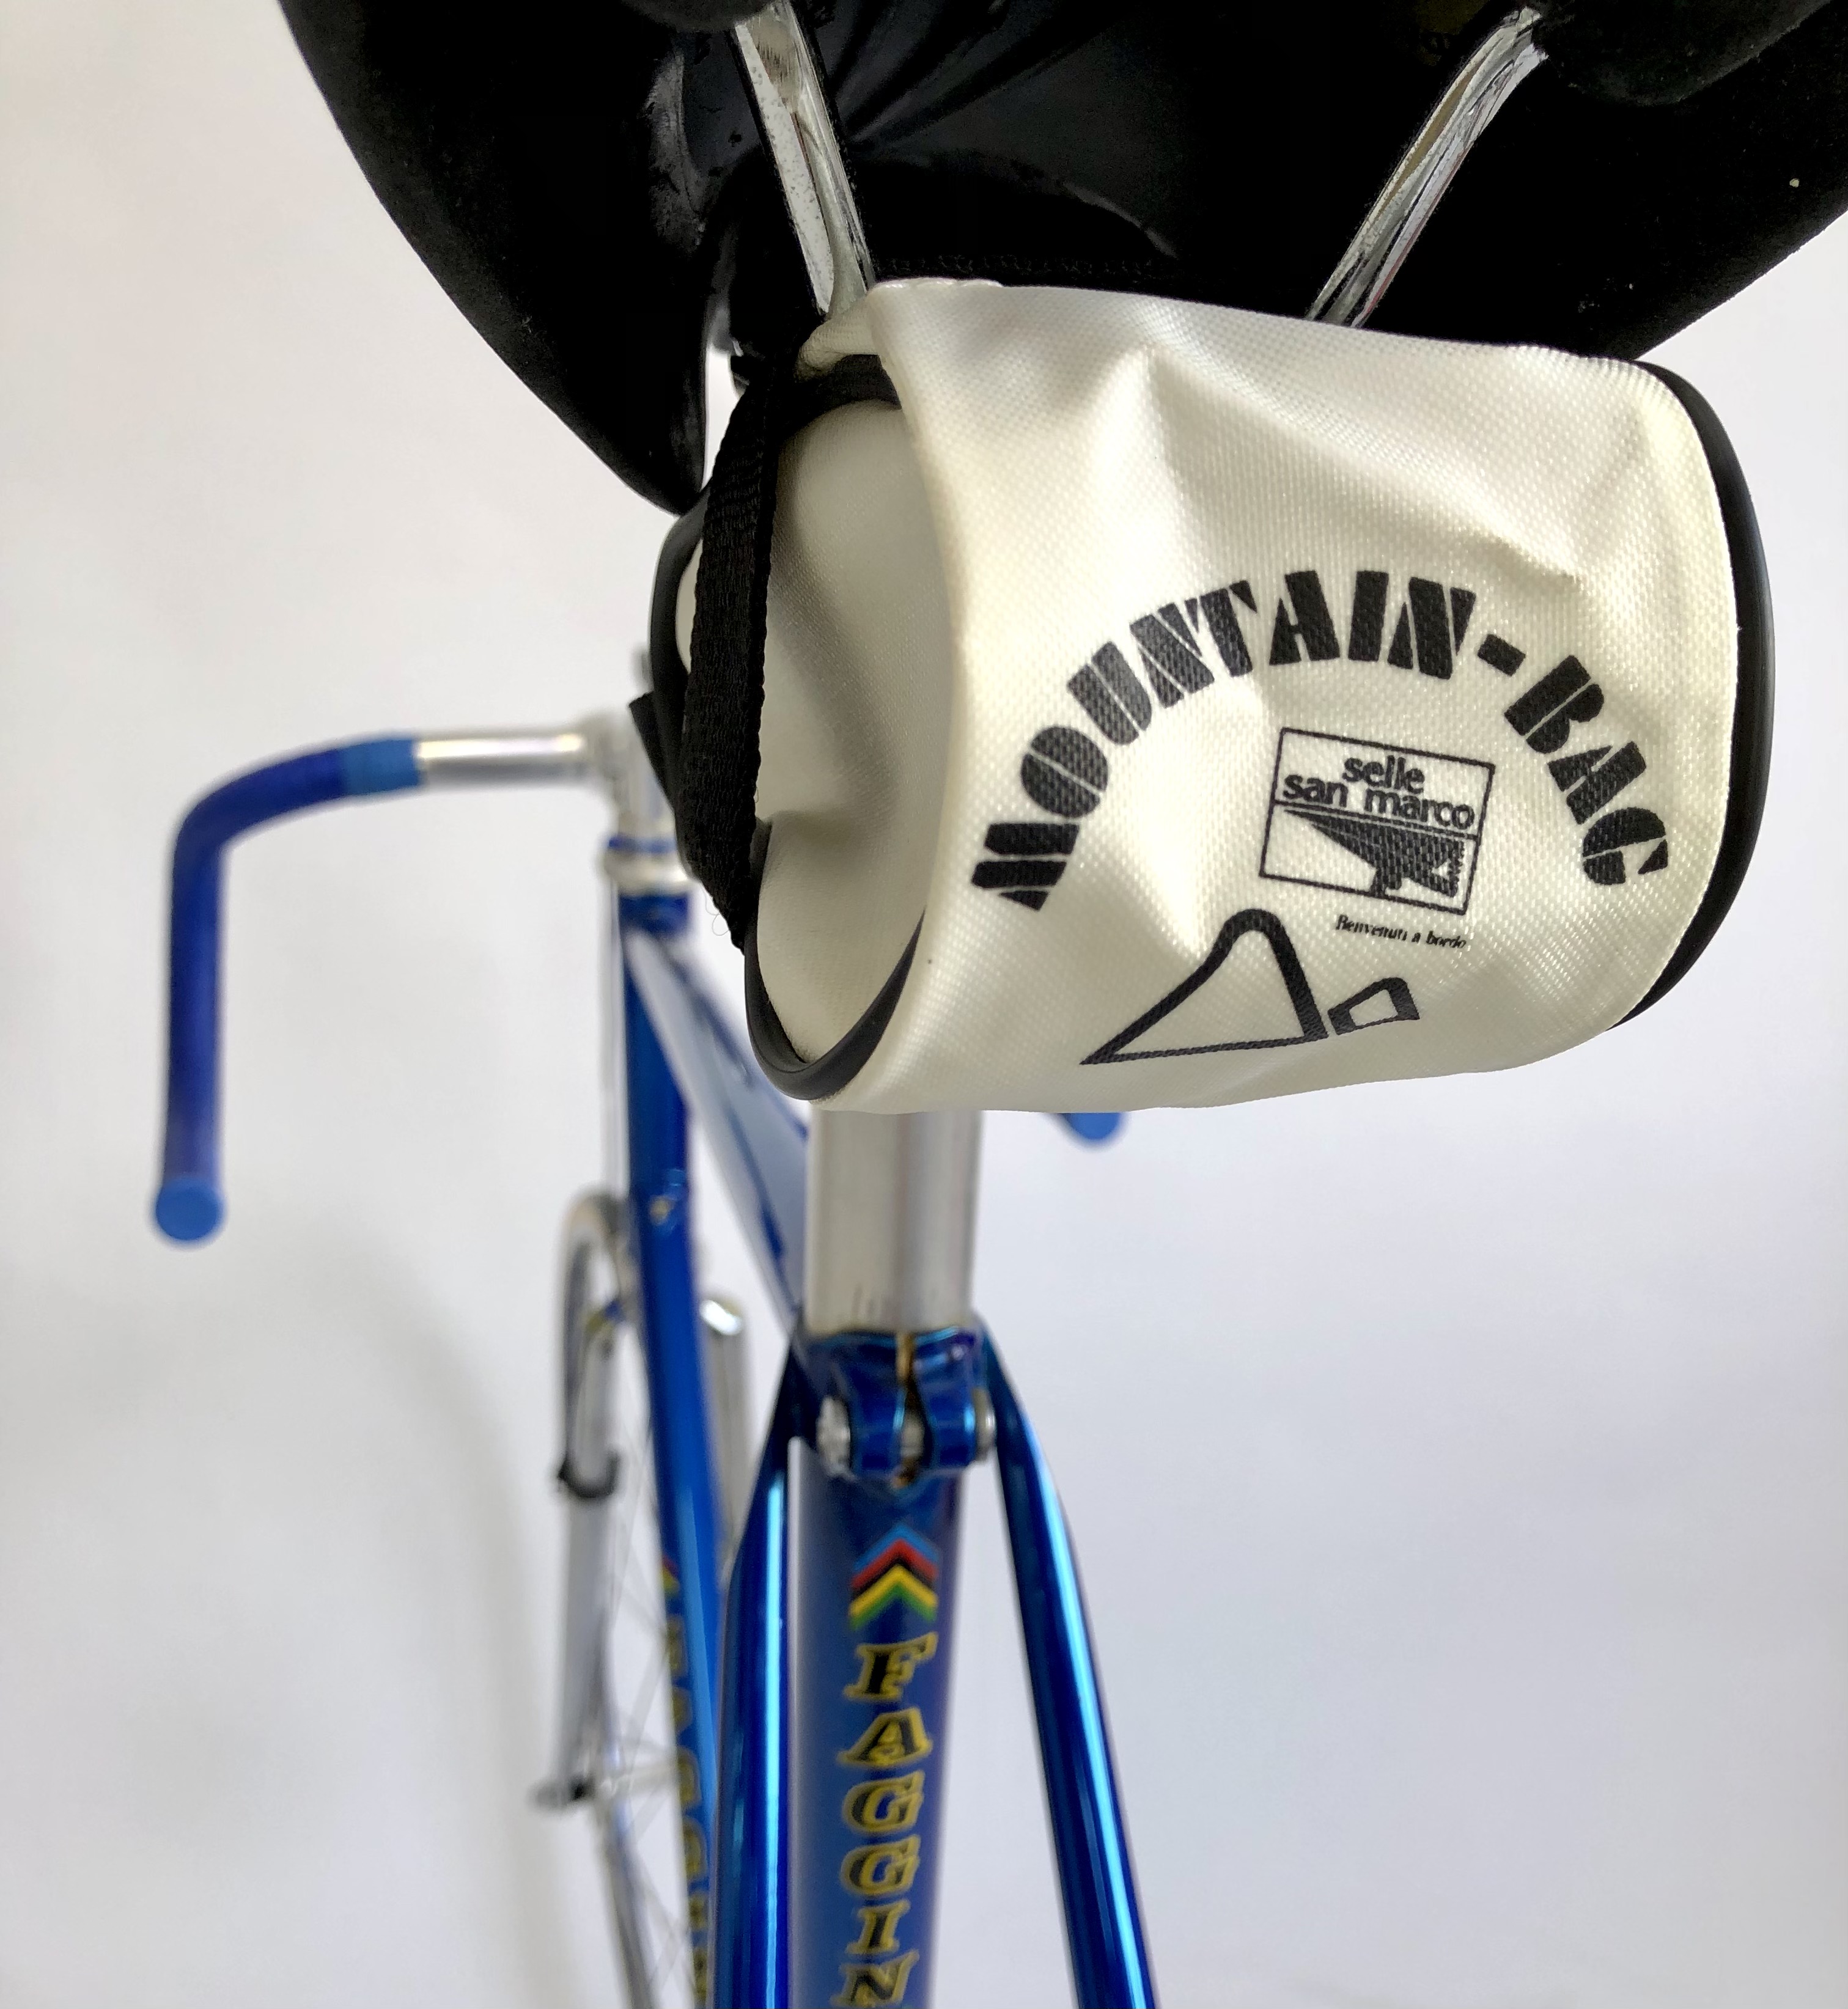 Selle San Marco Mountain-Bag Alforja para llantas de bicicleta de carretera nylon blanca